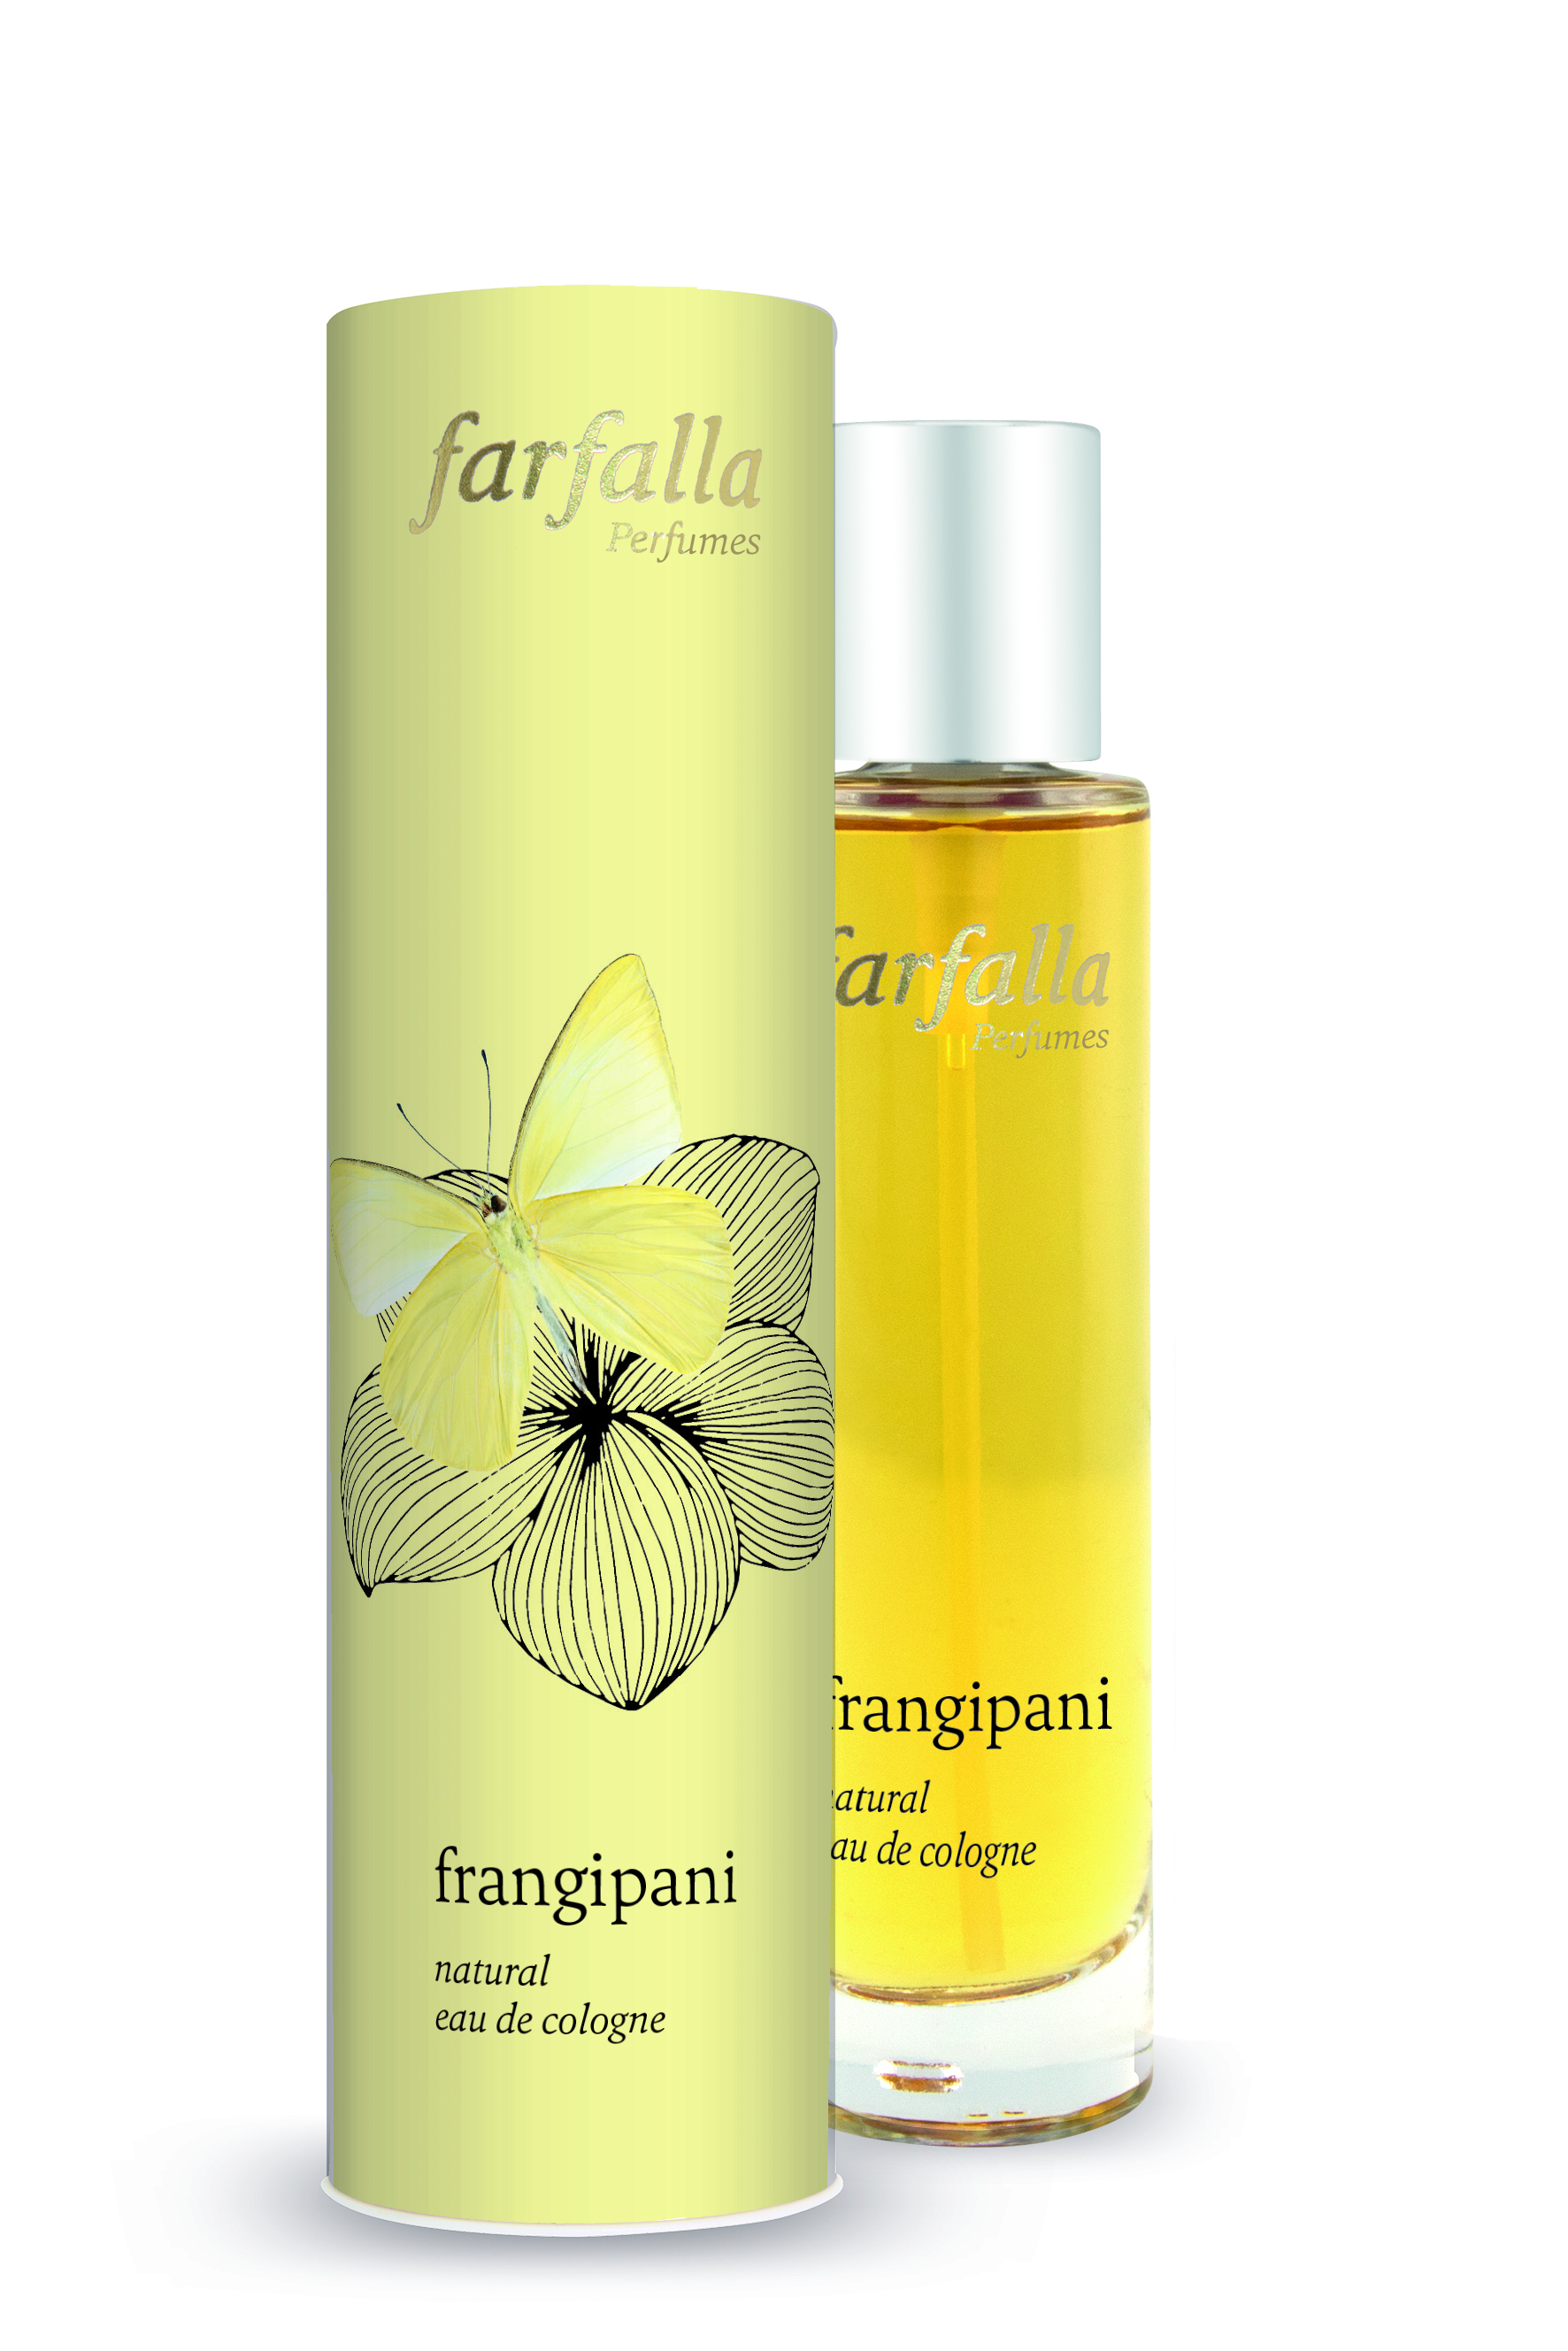 Farfalla frangipani natural eau de cologne 50ml